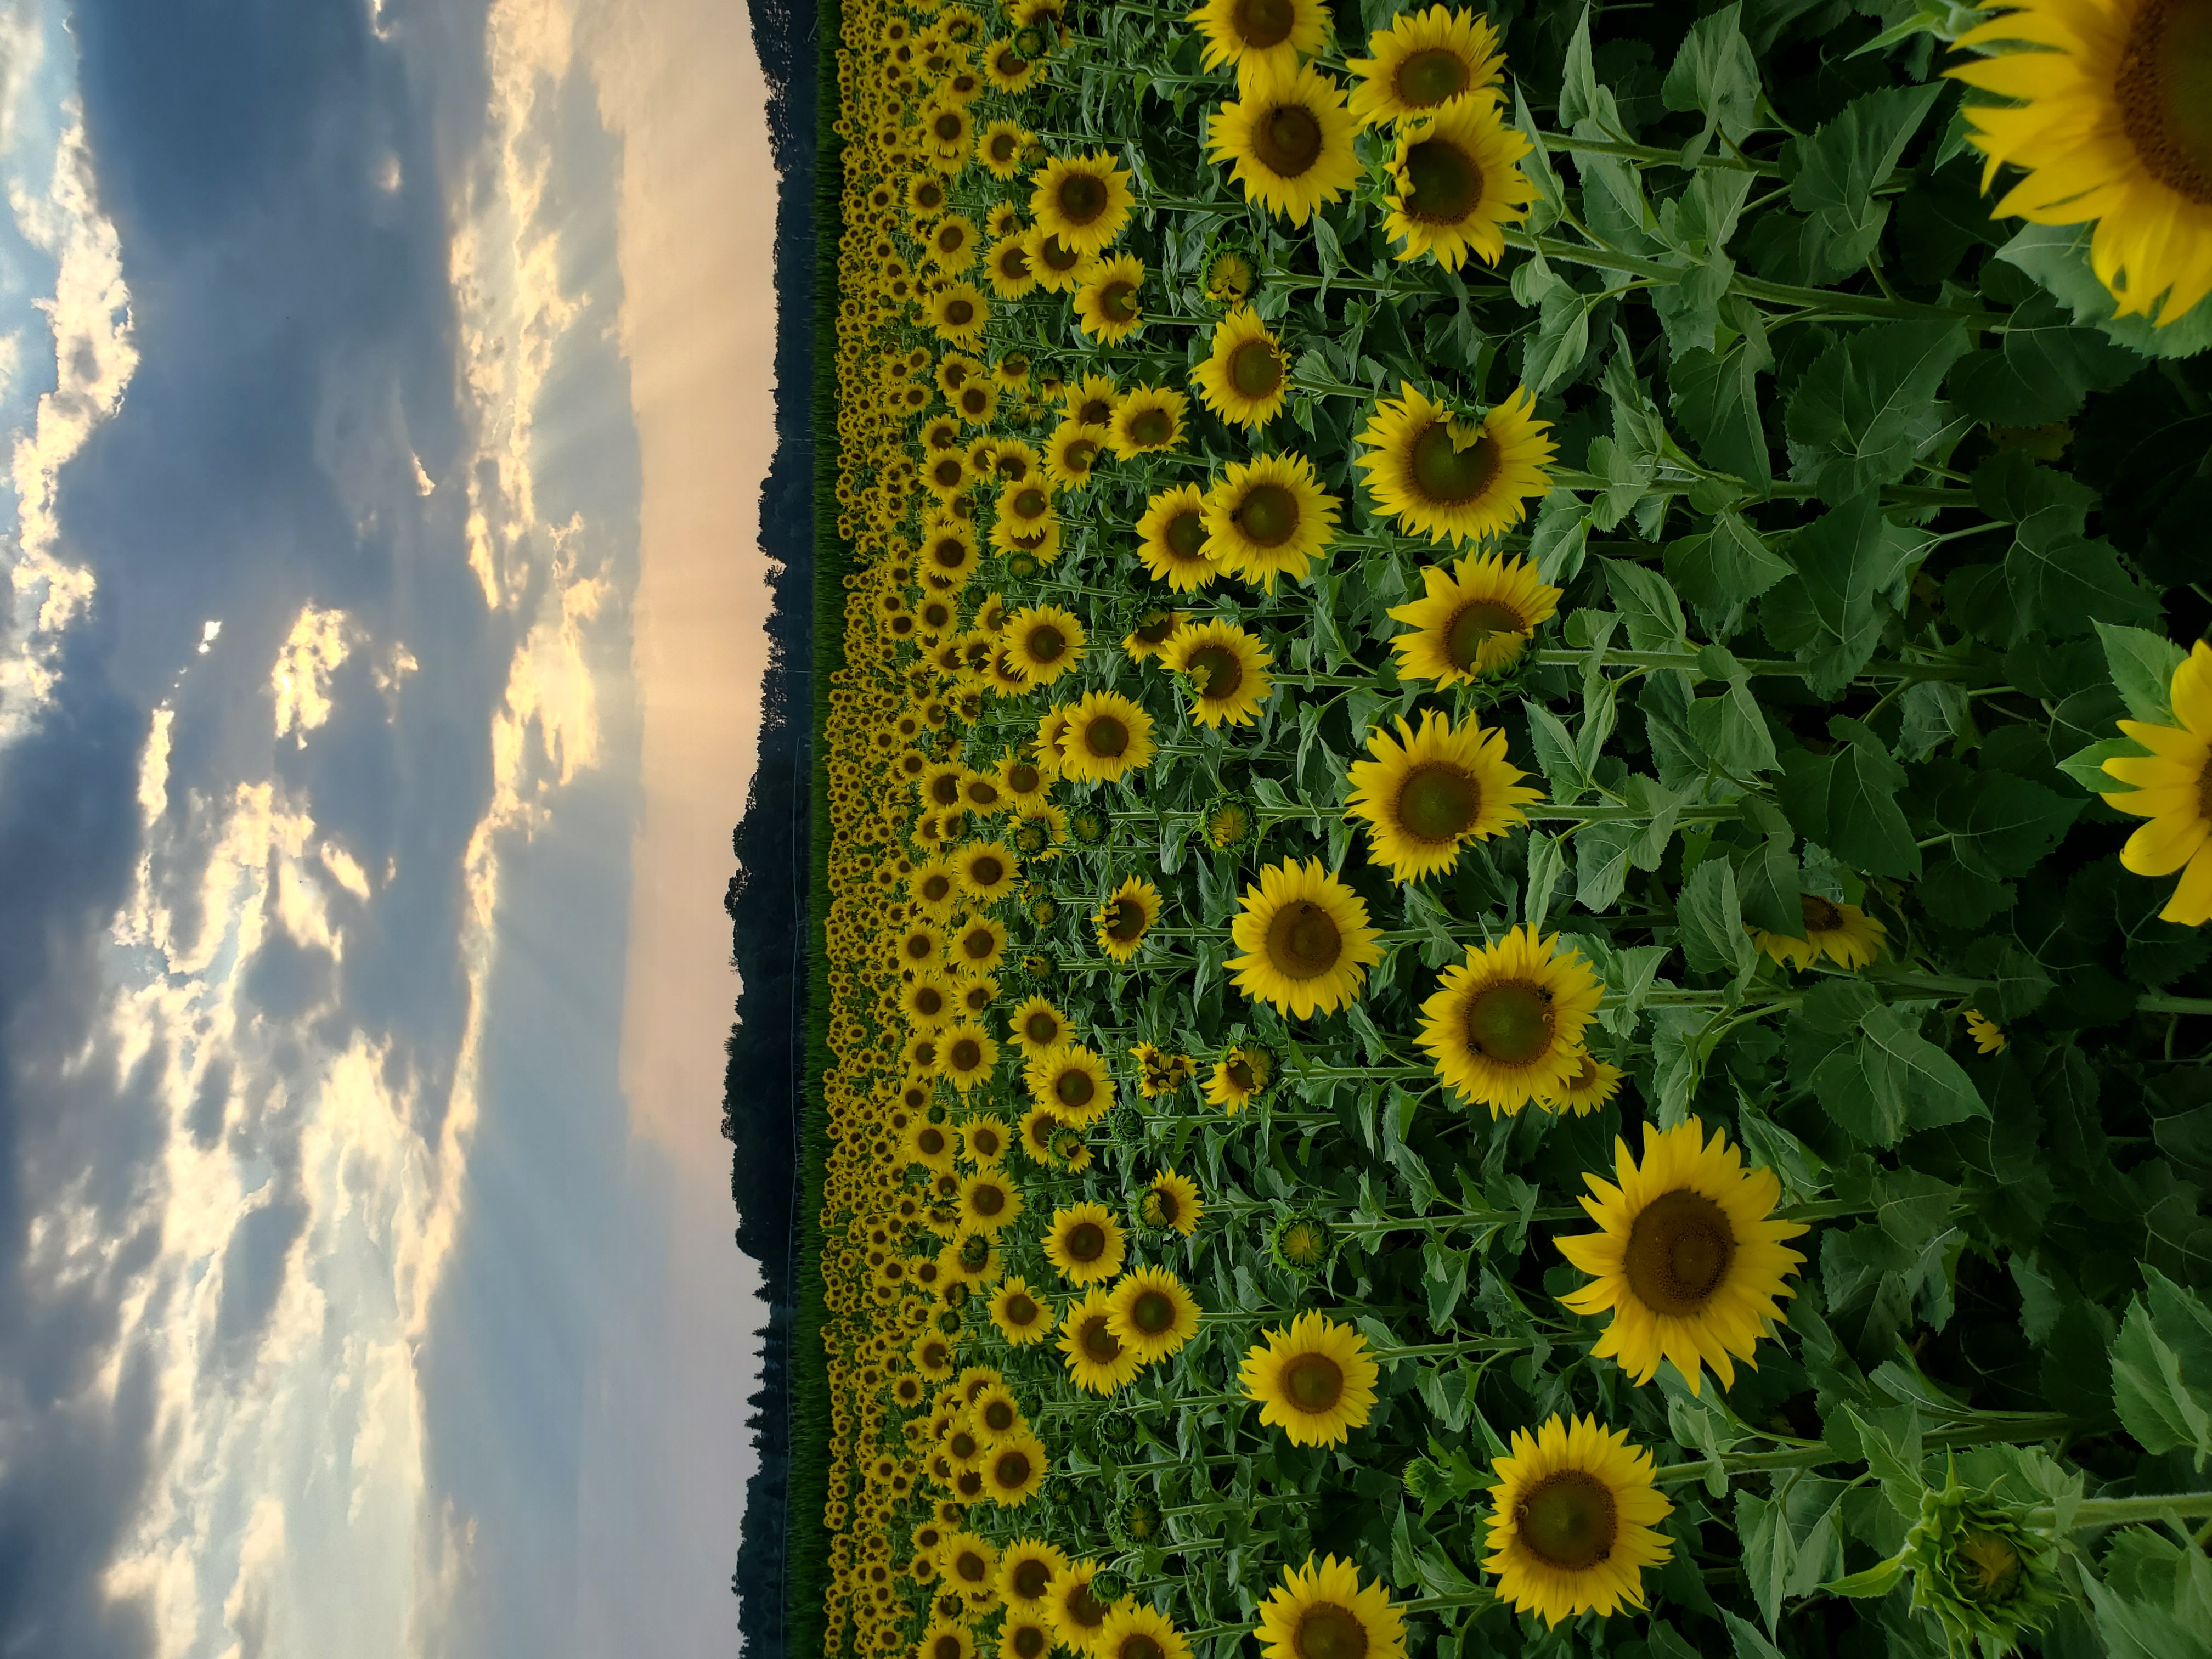 Sam Green Barn Sunflowers